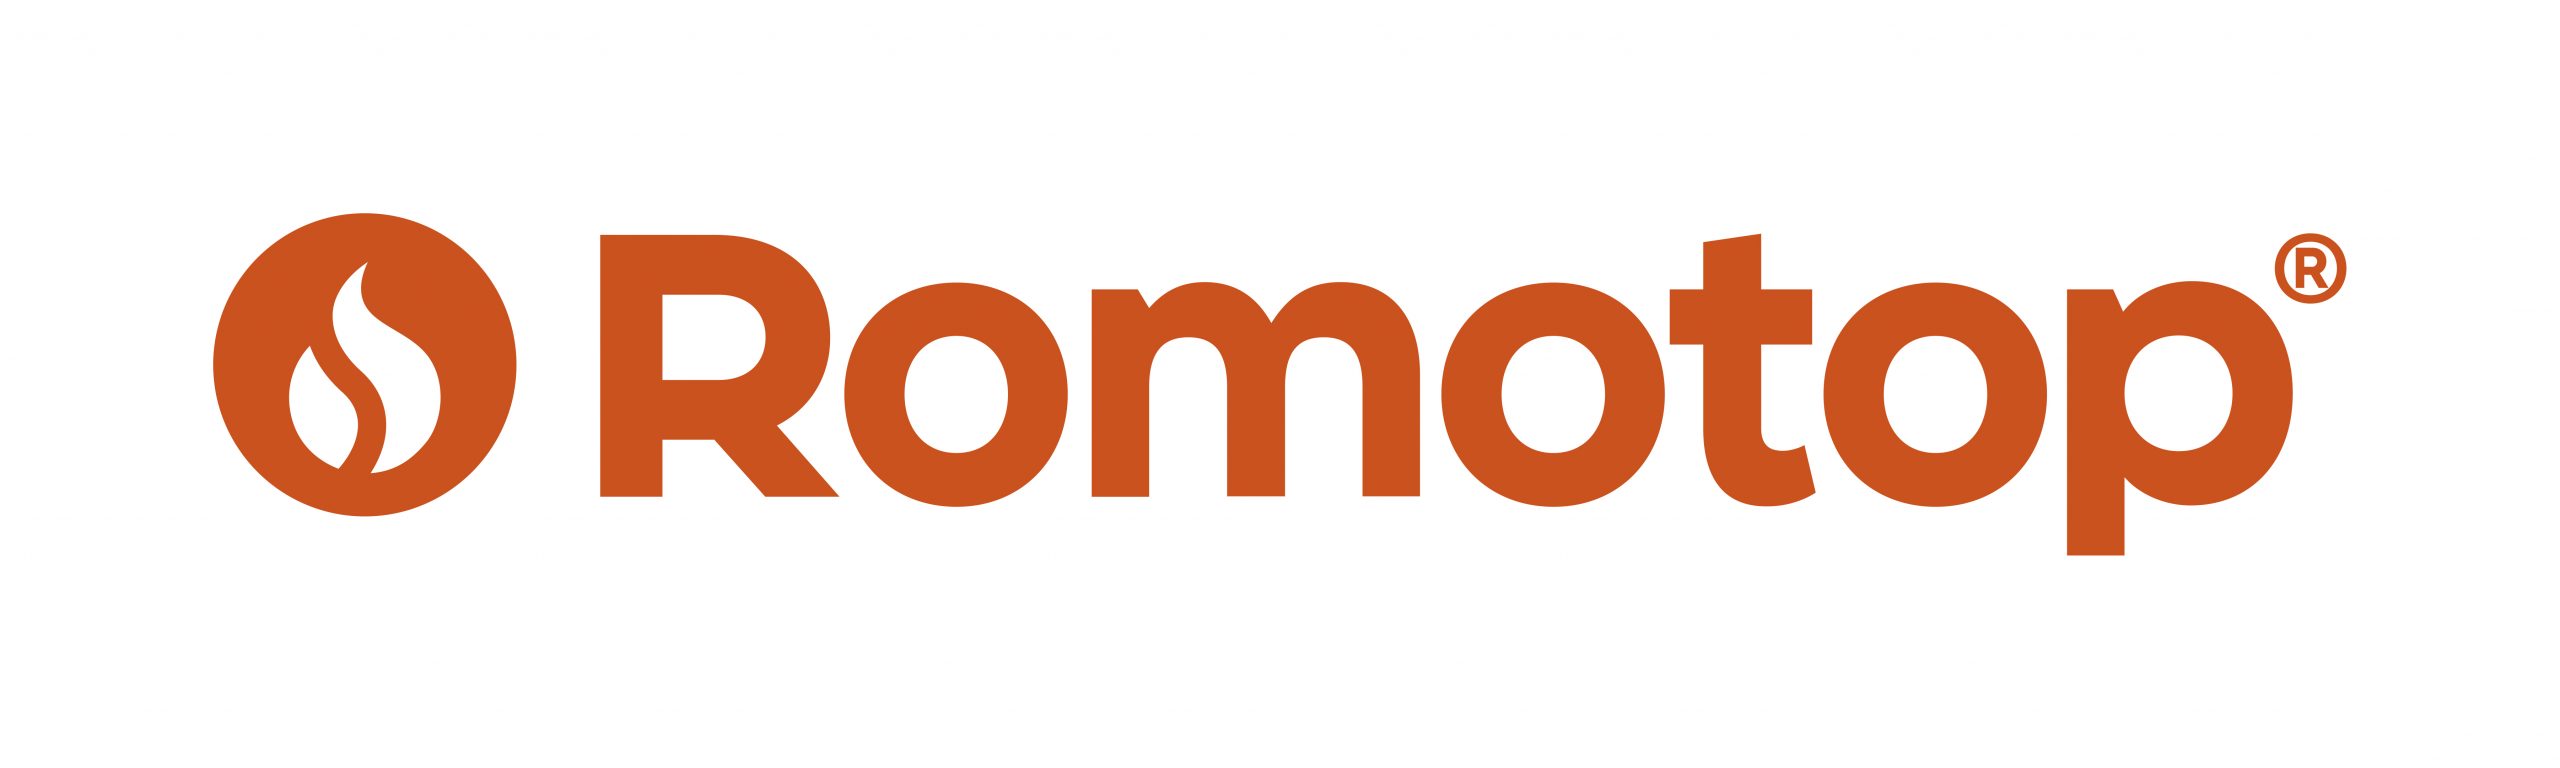 Romotop_logo_cmyk_pos